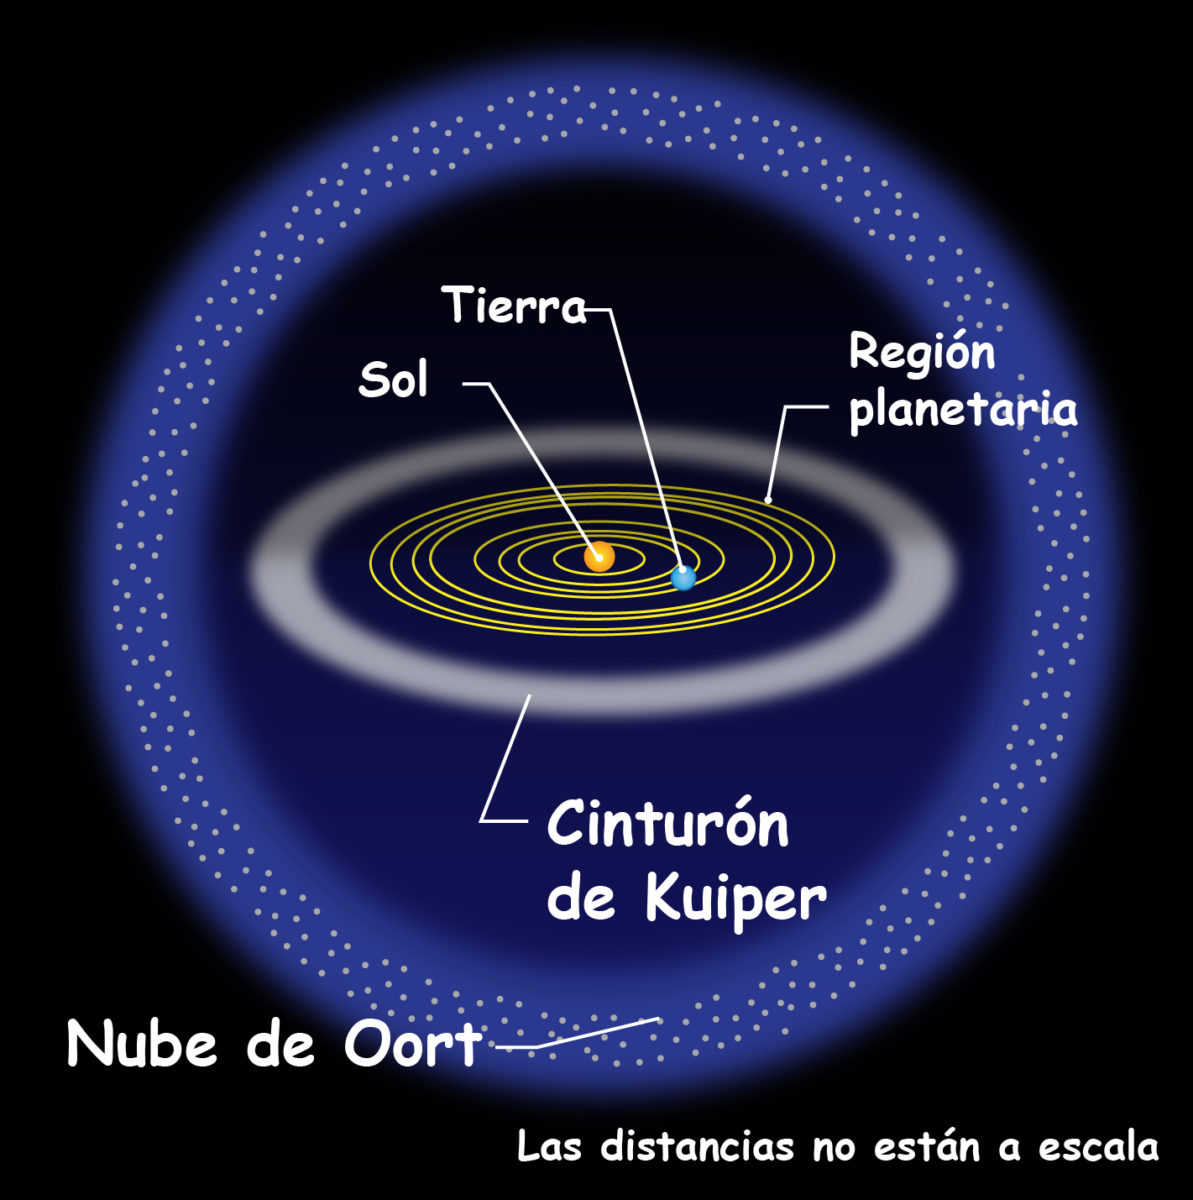 Nube de Oort